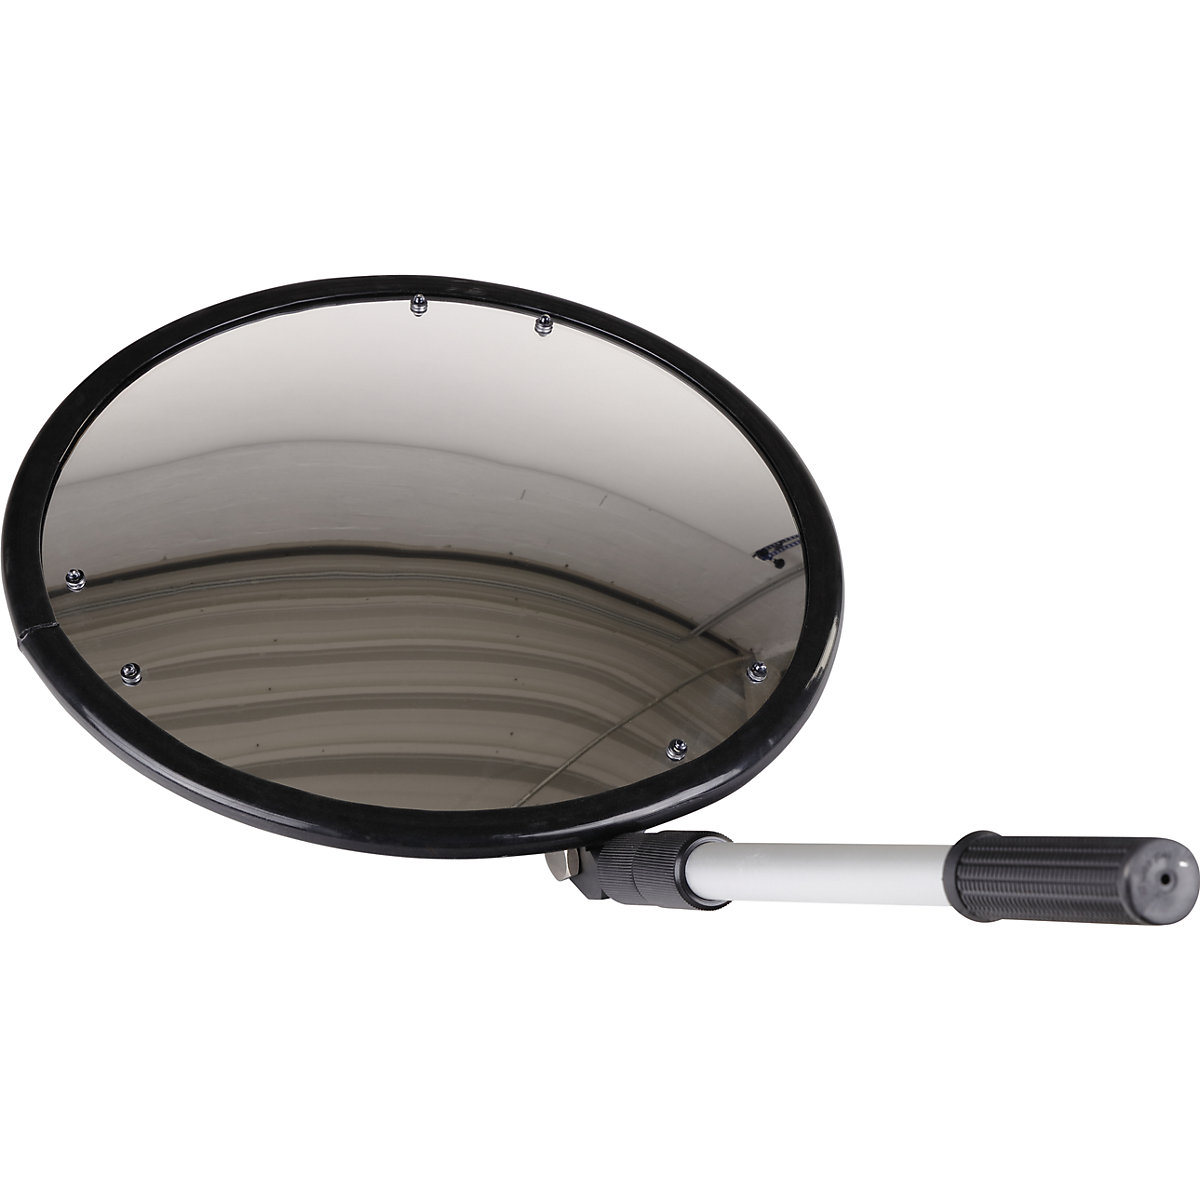 Inspektionsspiegel mit Teleskoparm: rund, mit Rollenfüßen